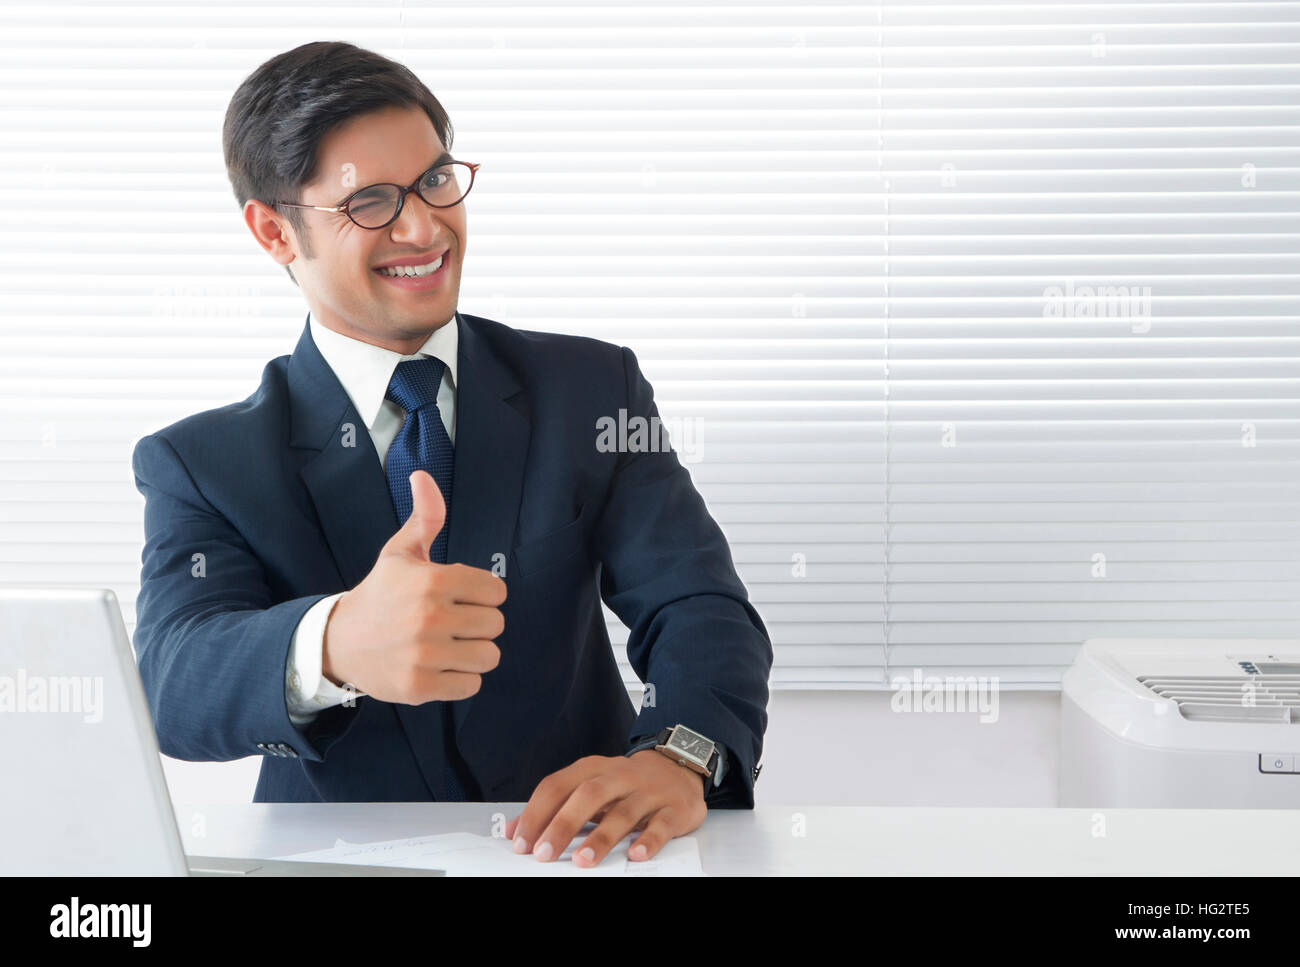 Jeune homme professionnel dans humeur heureuse showing Thumbs up sign et clignant de l'œil chez l'office de tourisme Banque D'Images